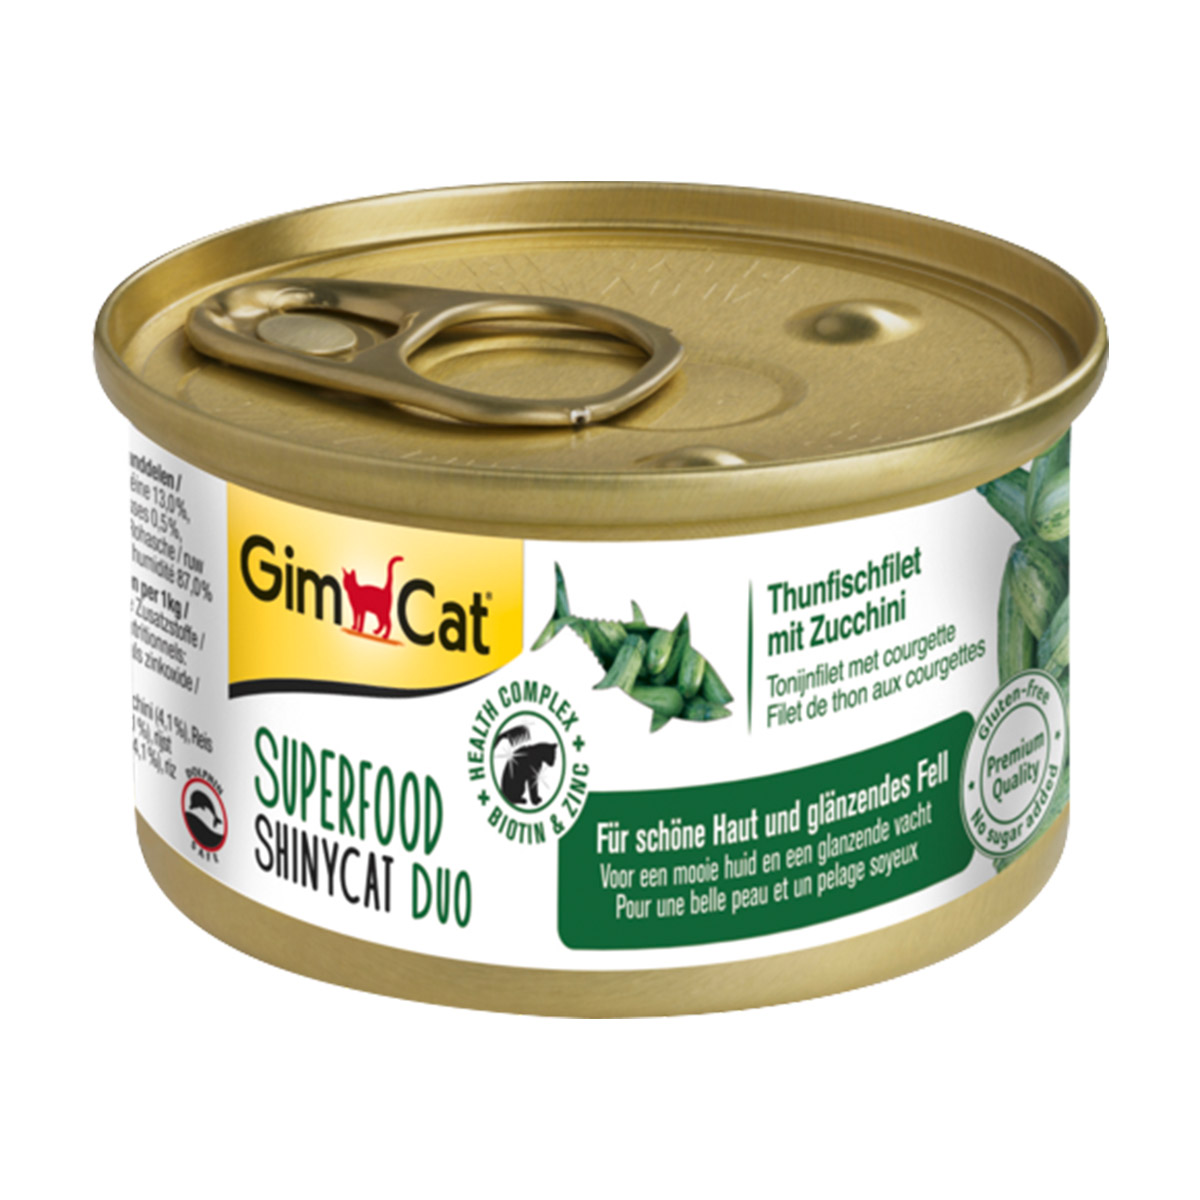 GimCat Superfood ShinyCat Duo tuňákový filet s cuketou